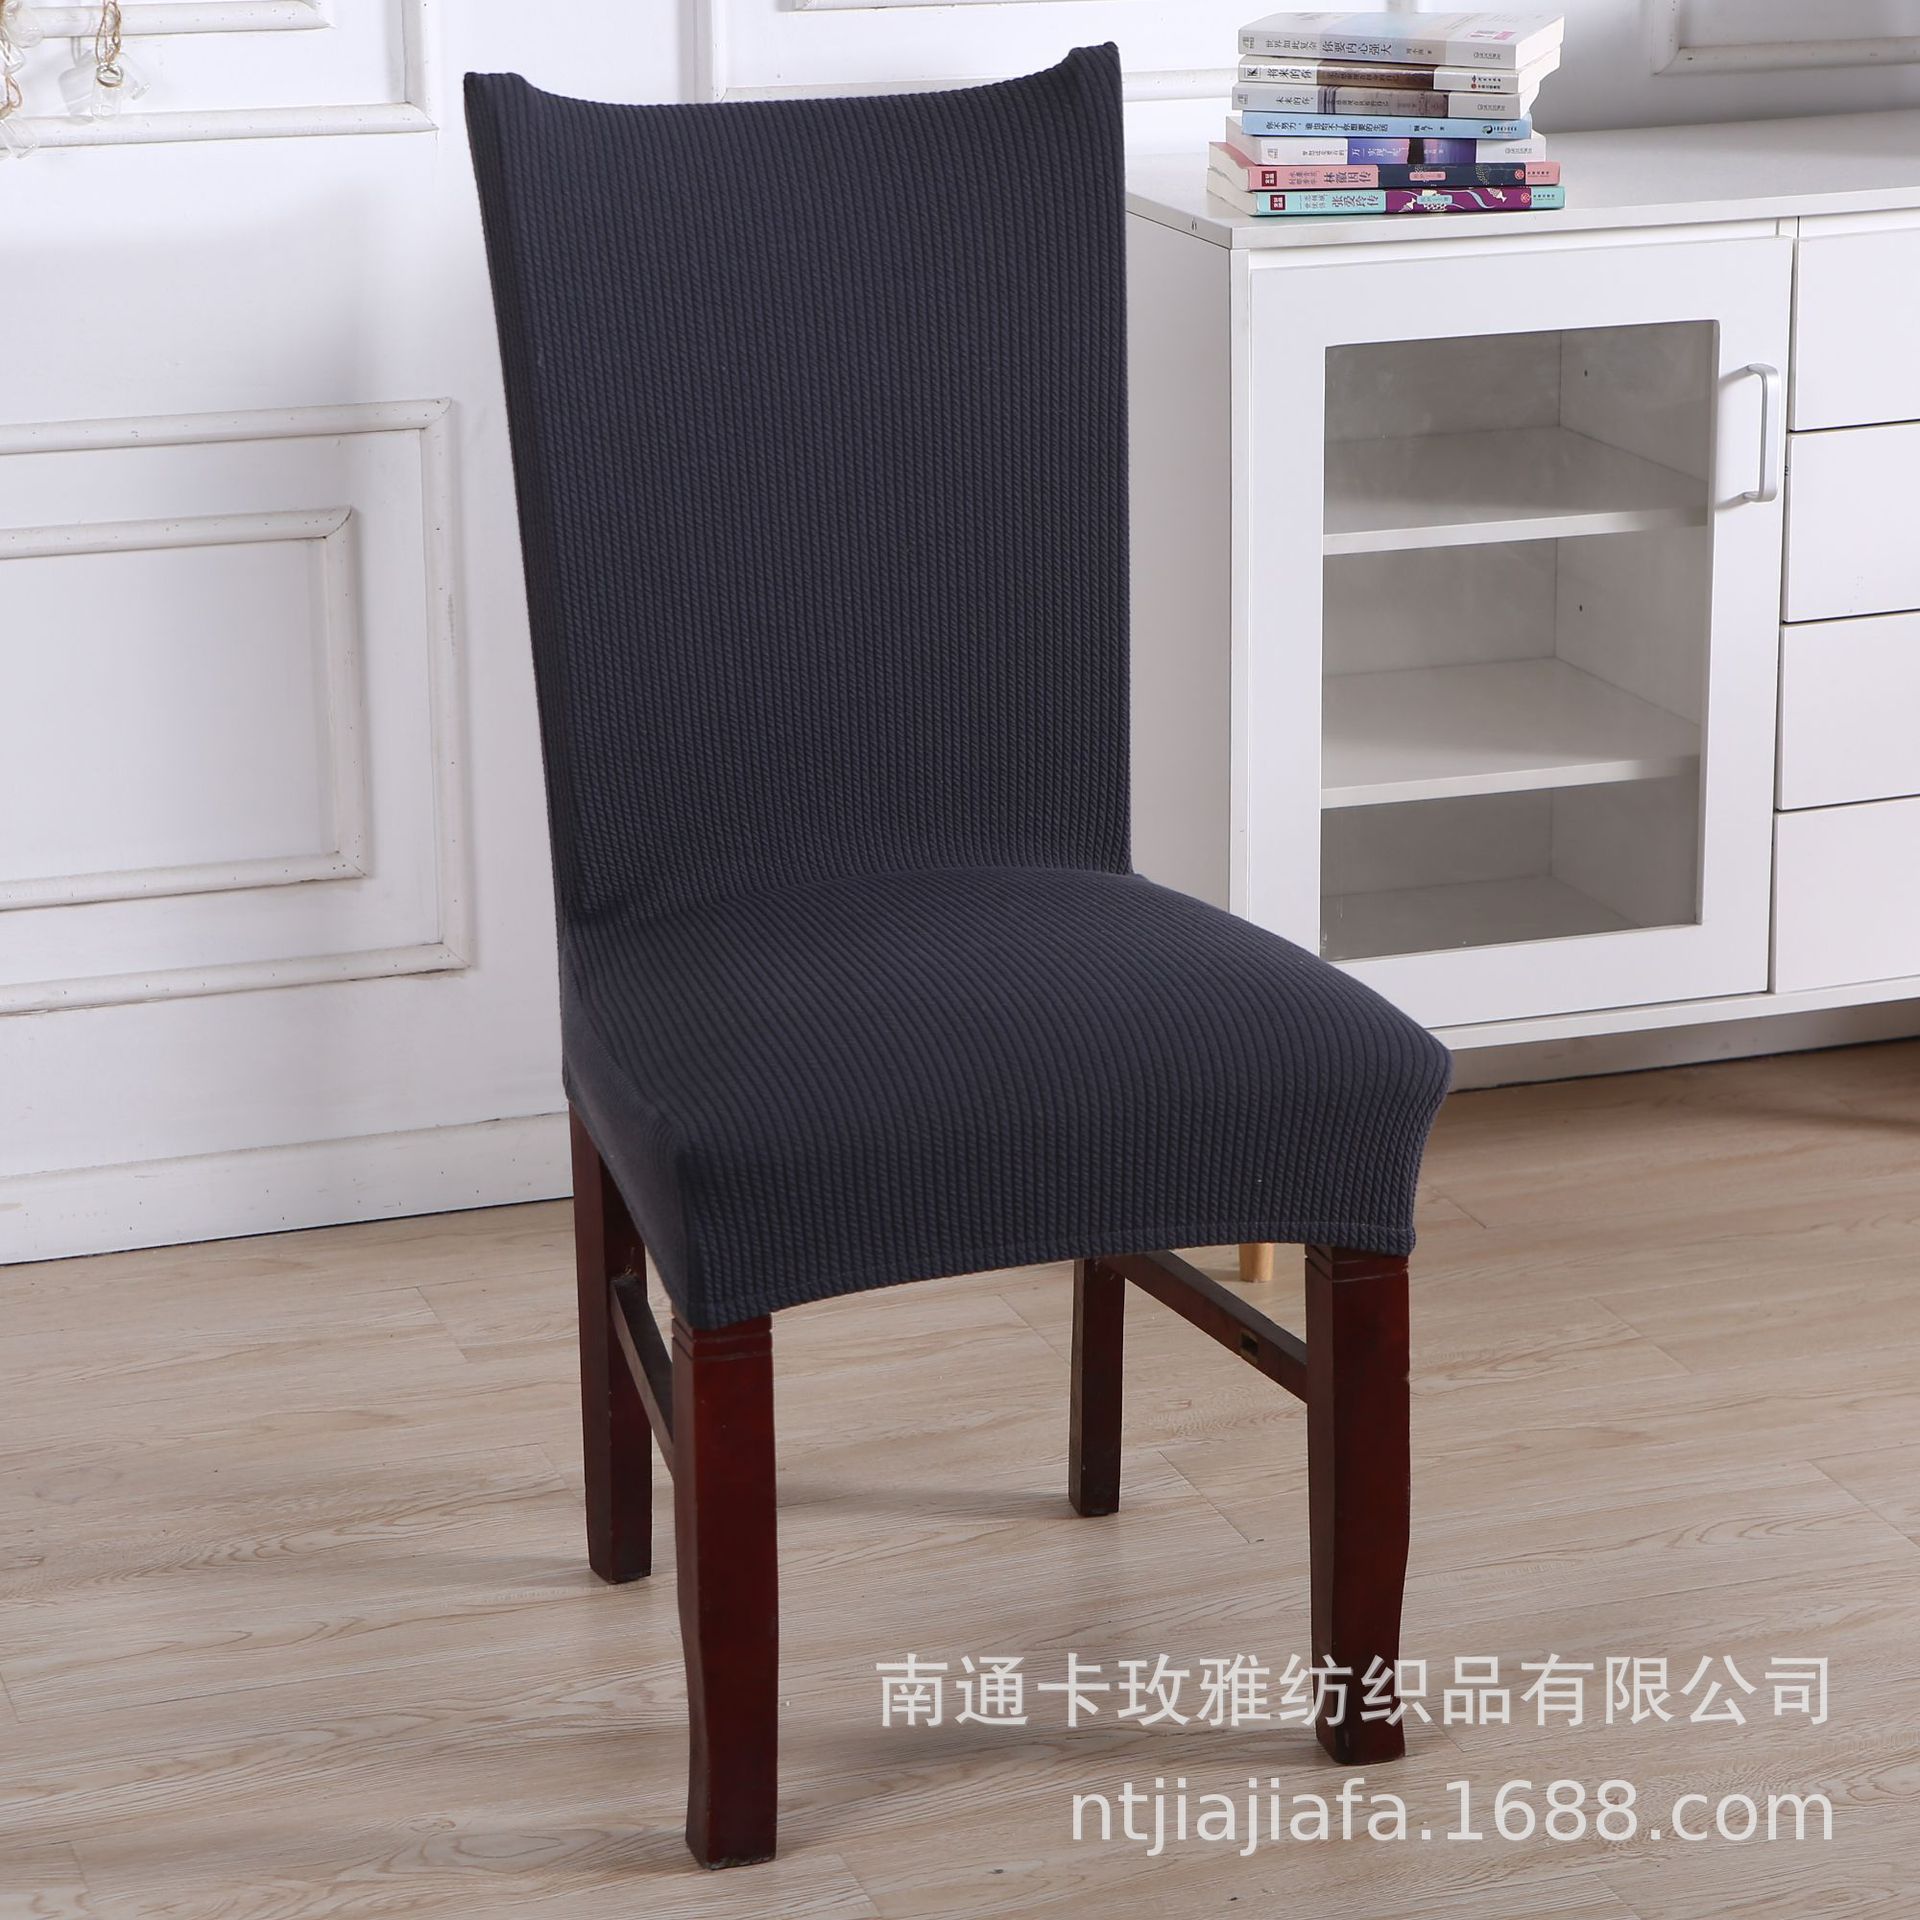 针织加厚弹力餐椅套连体椅子套纯色简约现代家用凳子套酒店椅套